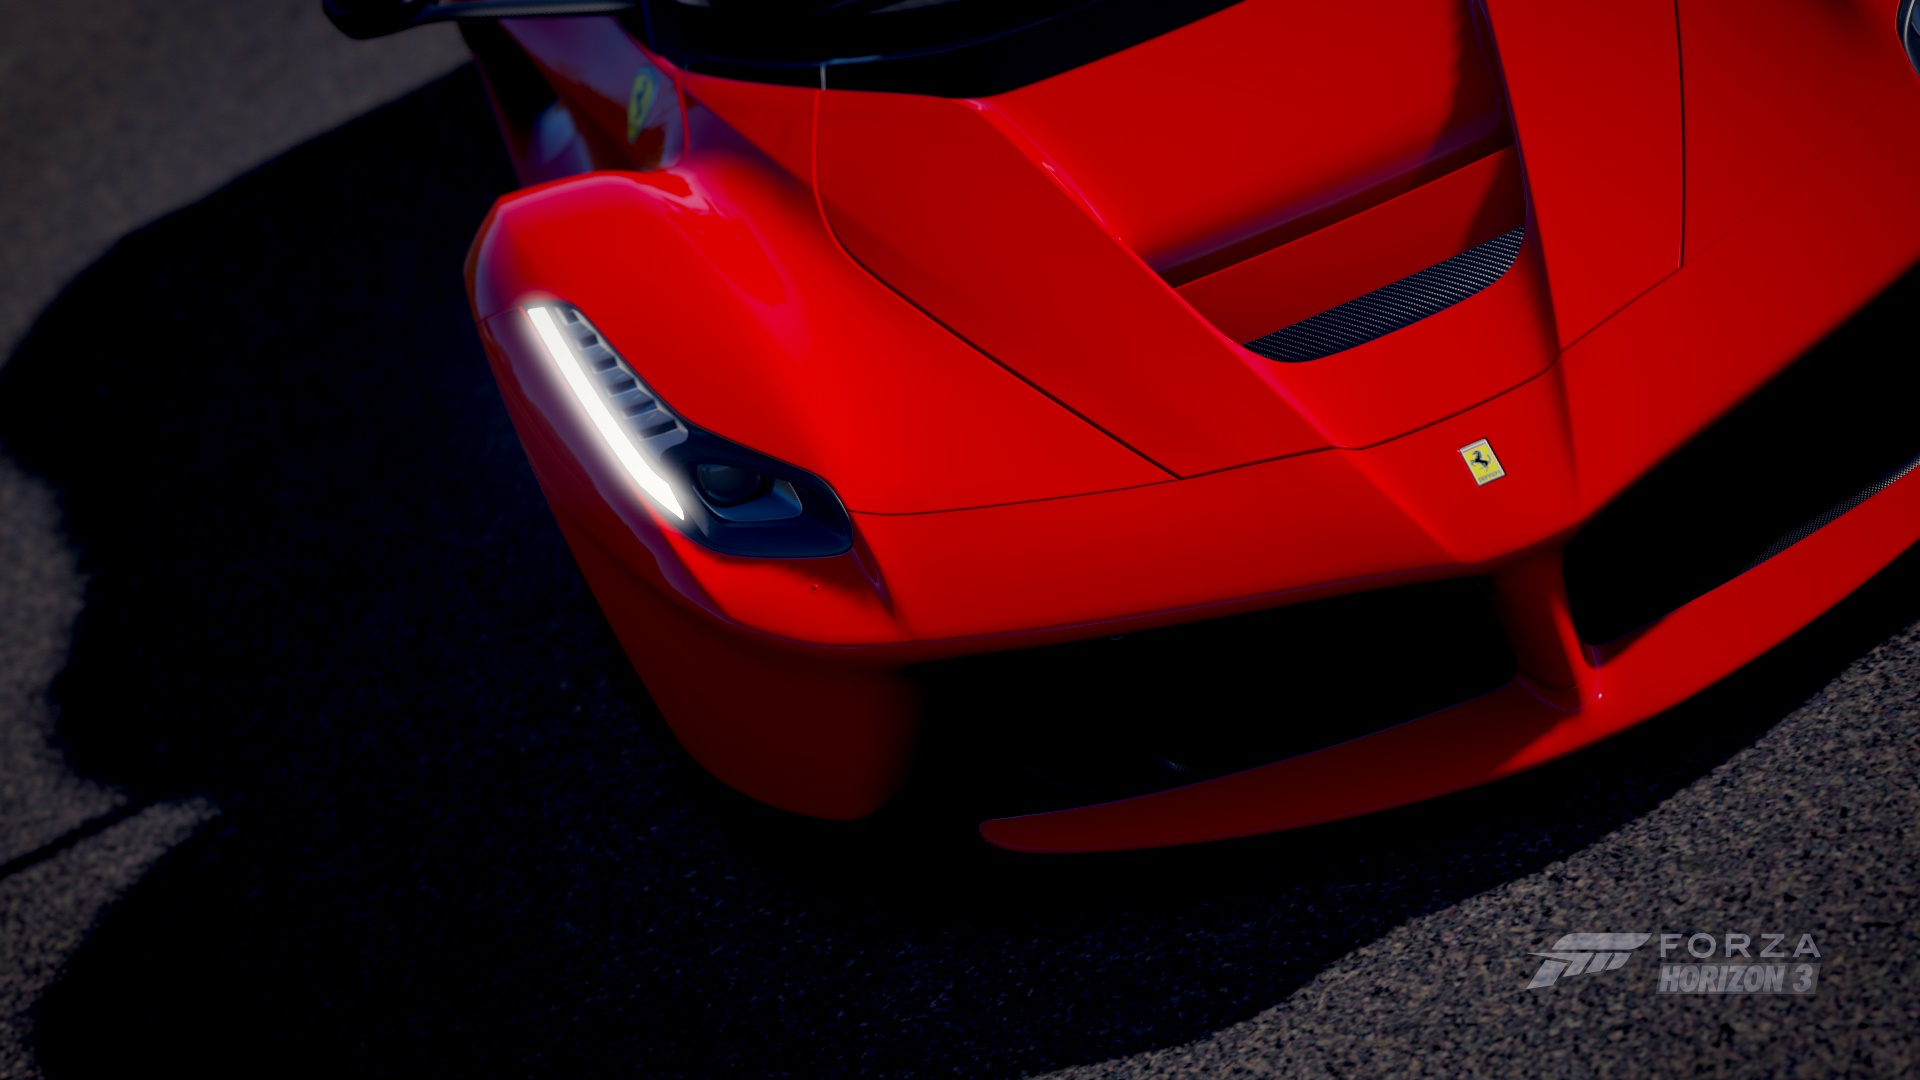 Download mobile wallpaper Car, Ferrari Laferrari, Video Game, Forza Horizon 3, Forza for free.